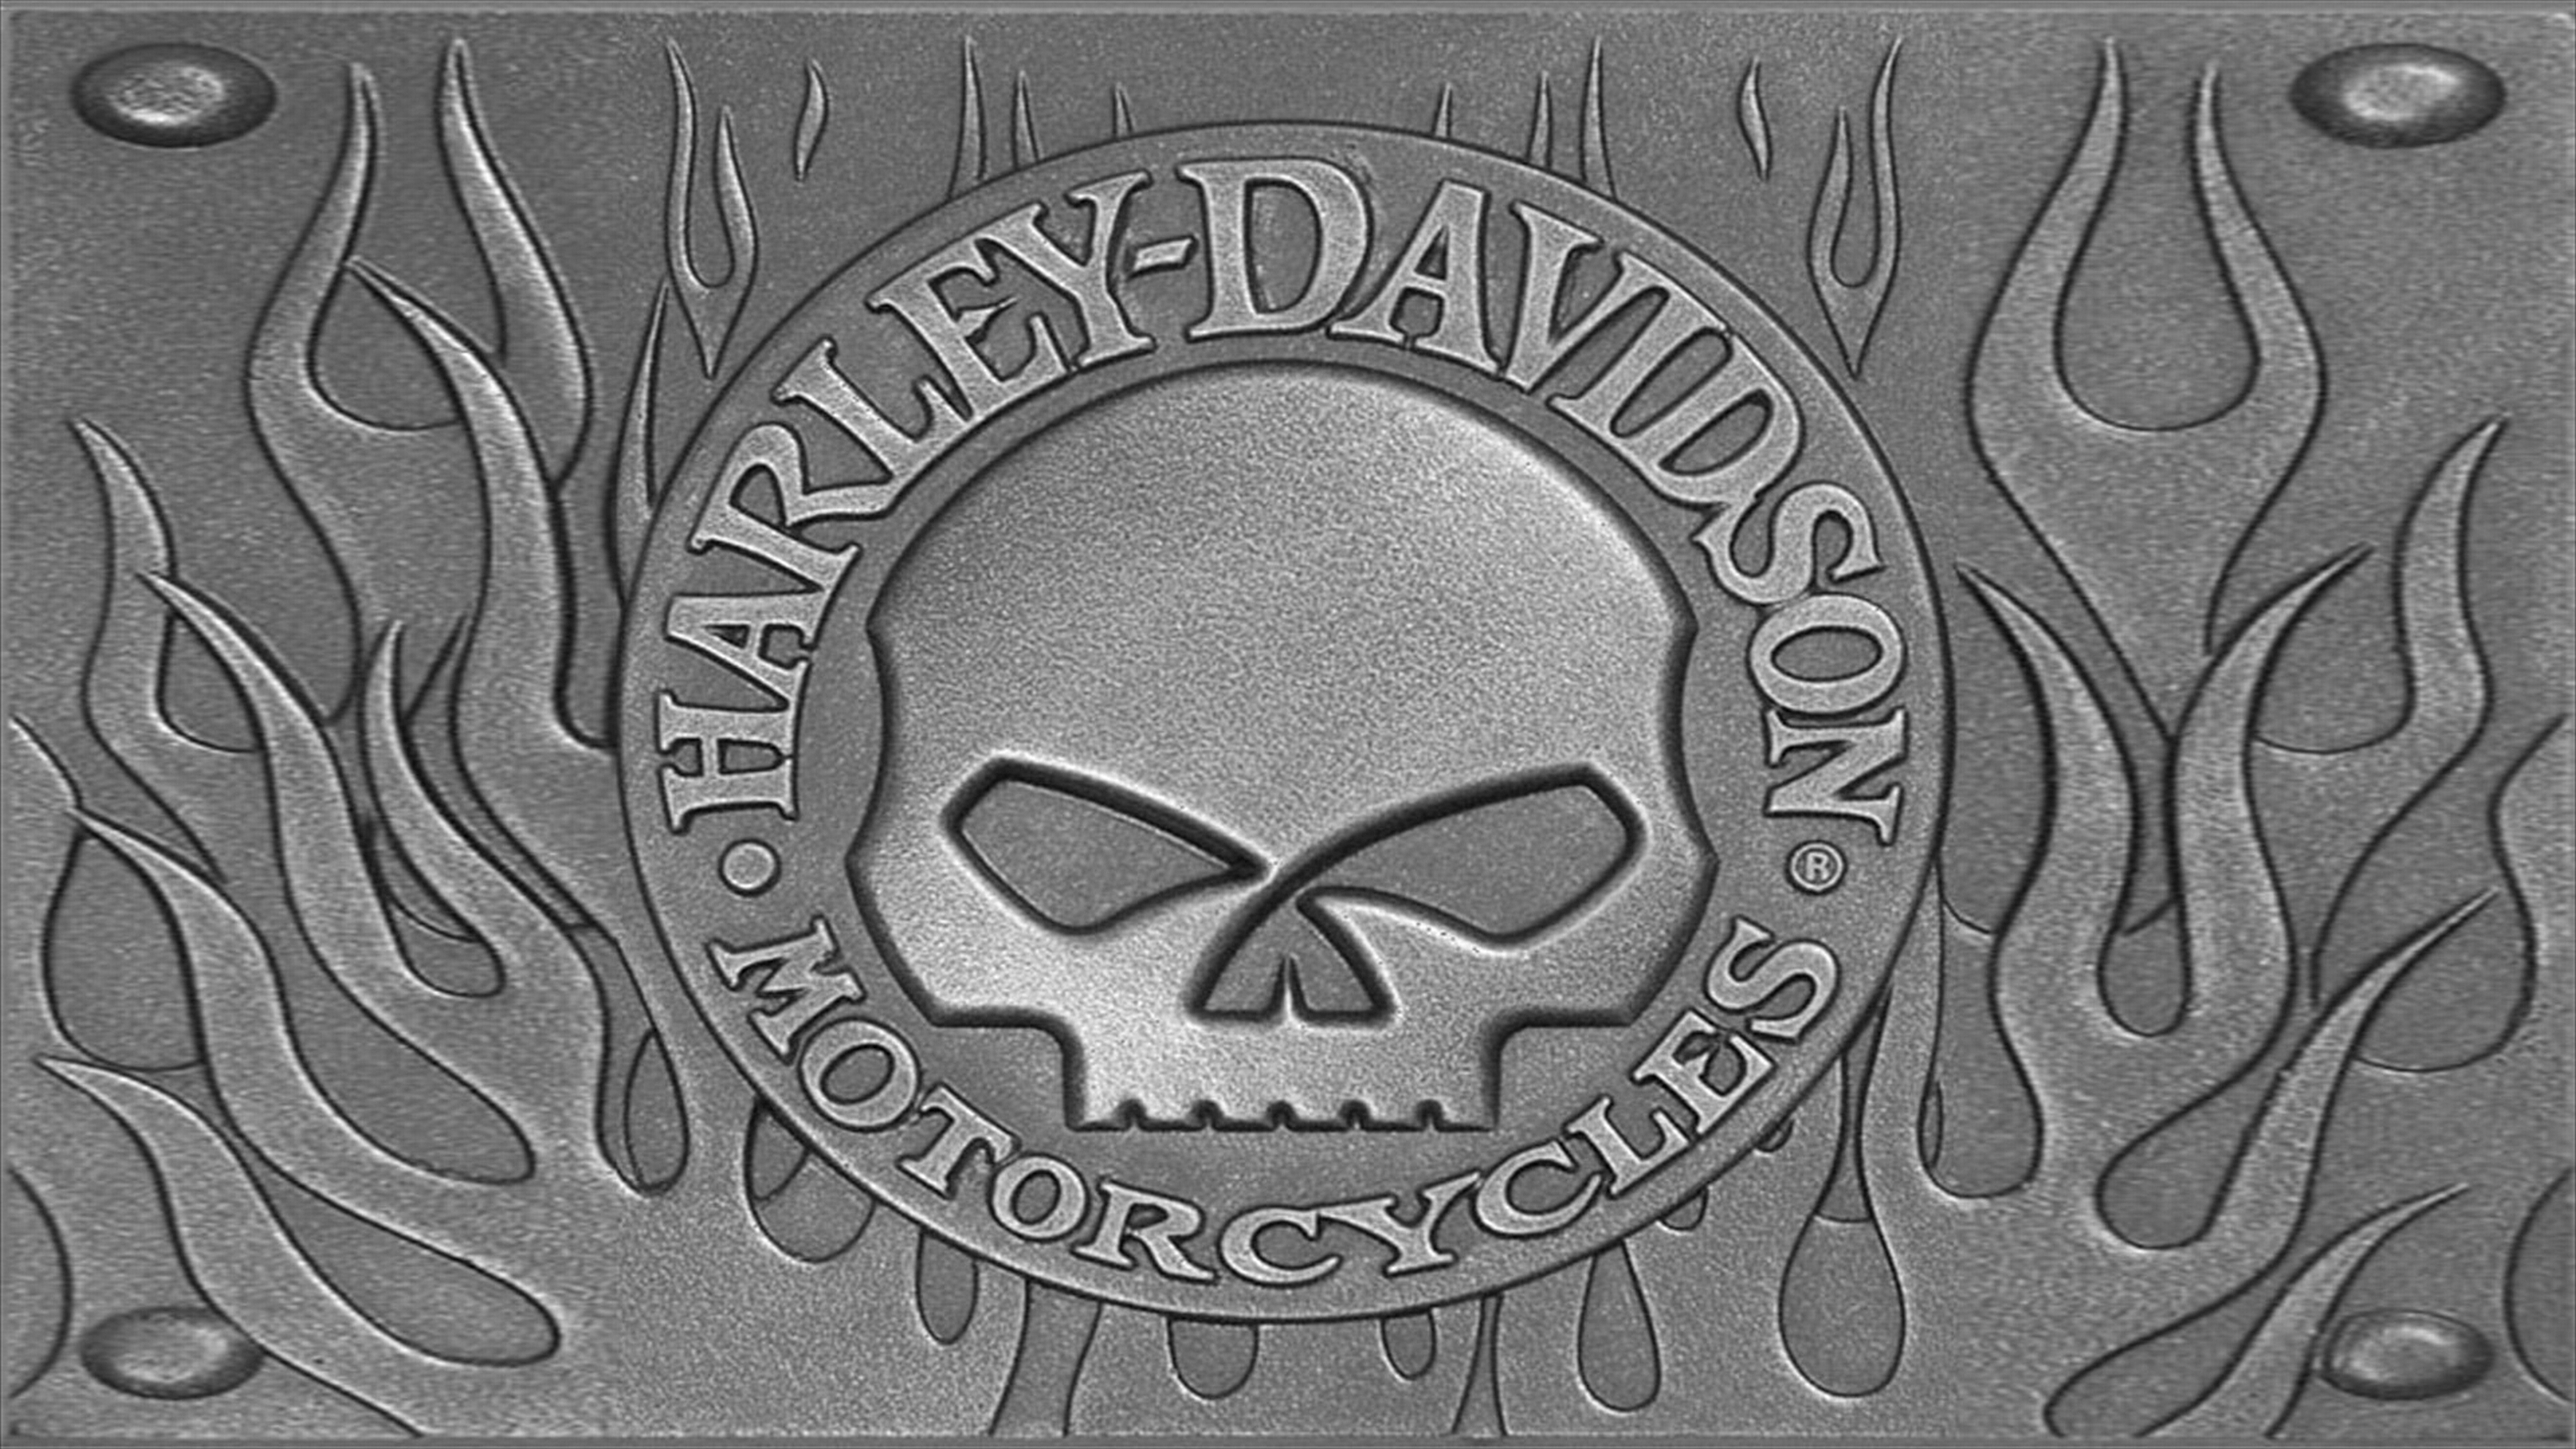 harley davidson, vehicles, motorcycles